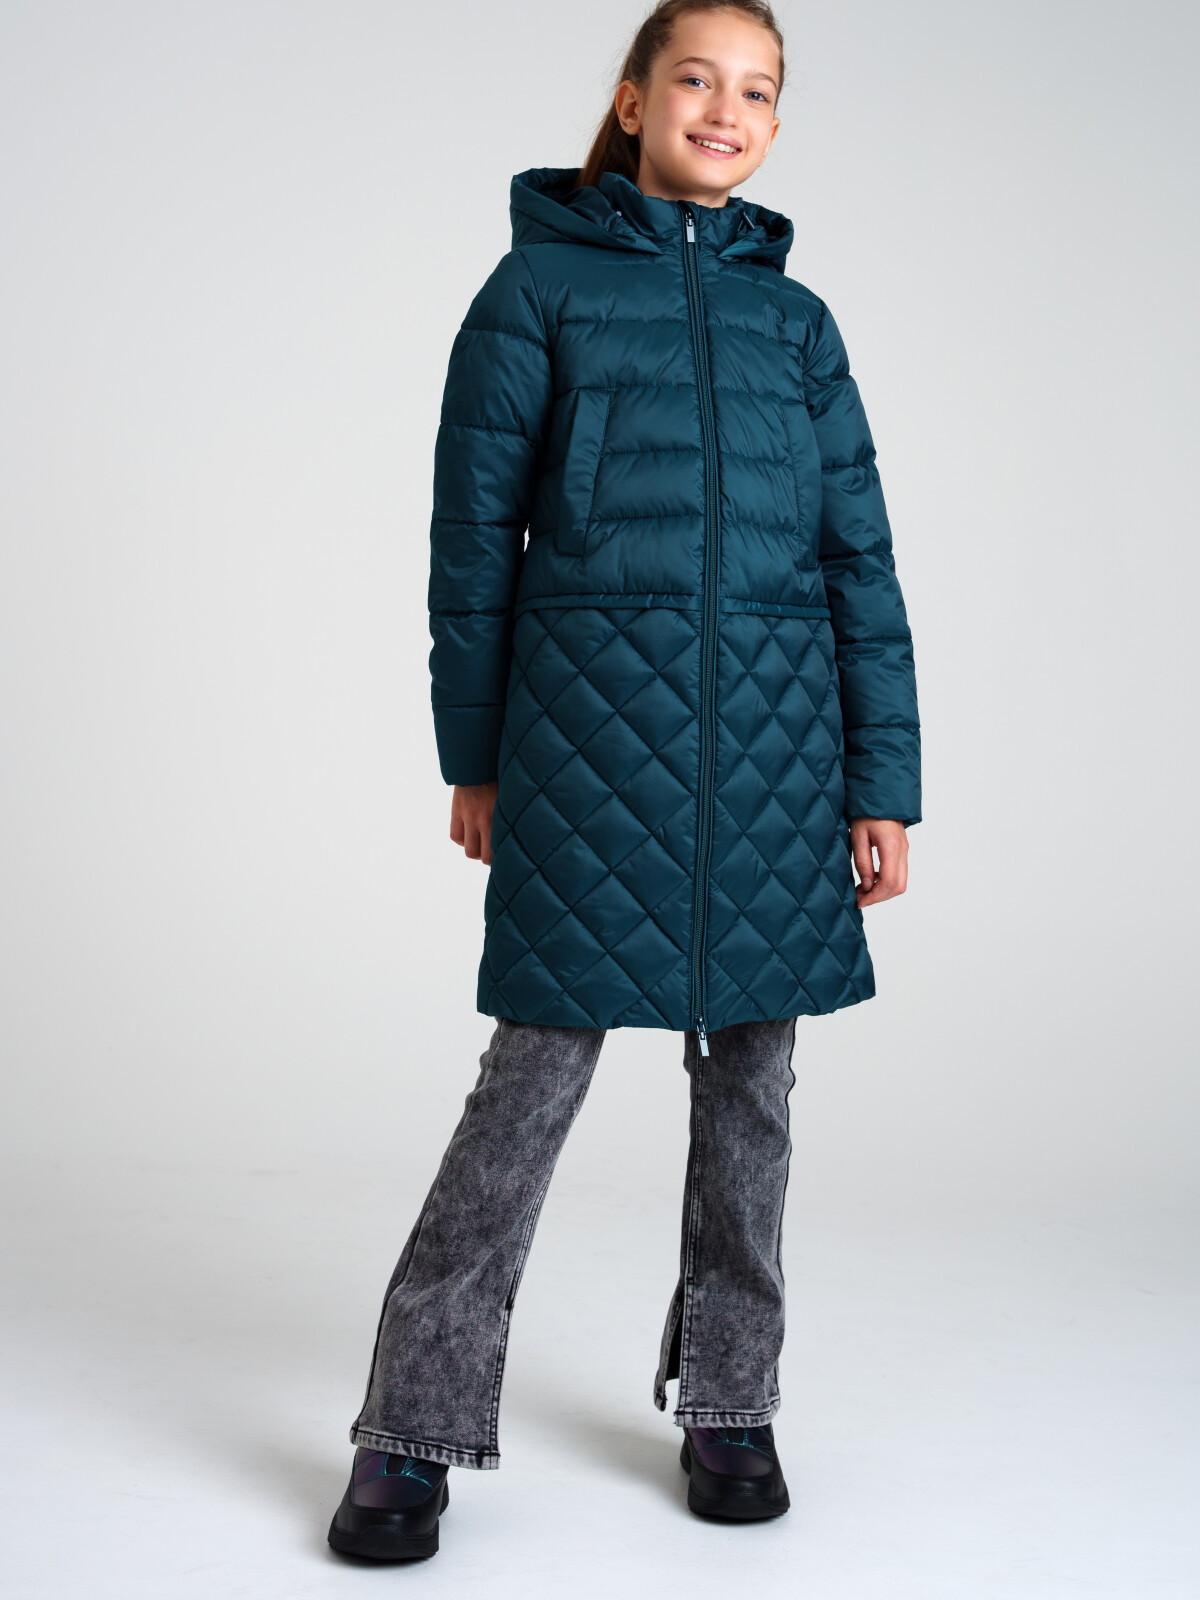 Пальто текстильное с полиуретановым покрытием для девочек PlayToday, темно-зеленый, 134